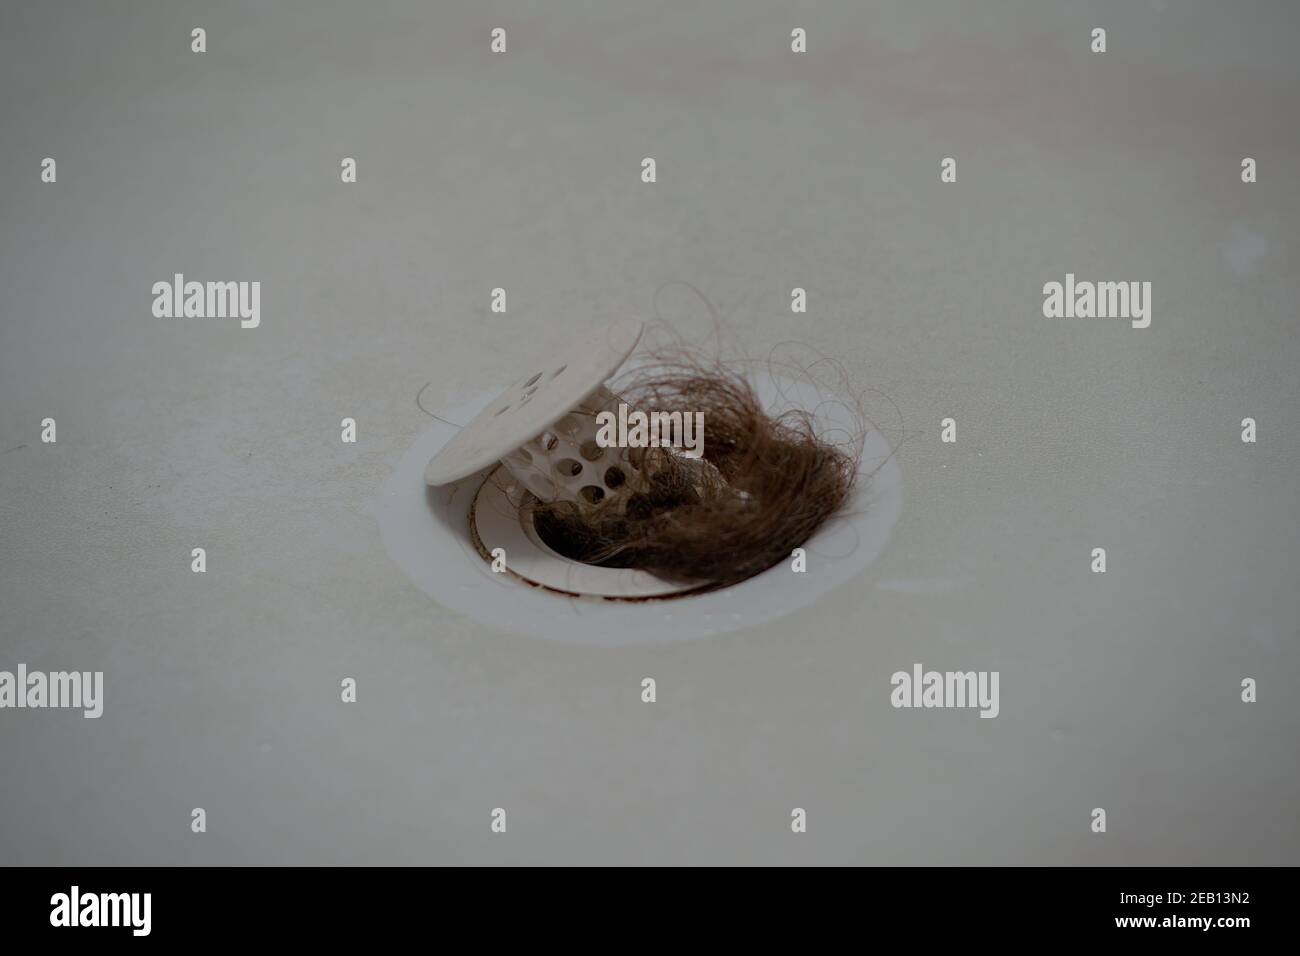 Capelli bloccati immagini e fotografie stock ad alta risoluzione - Alamy